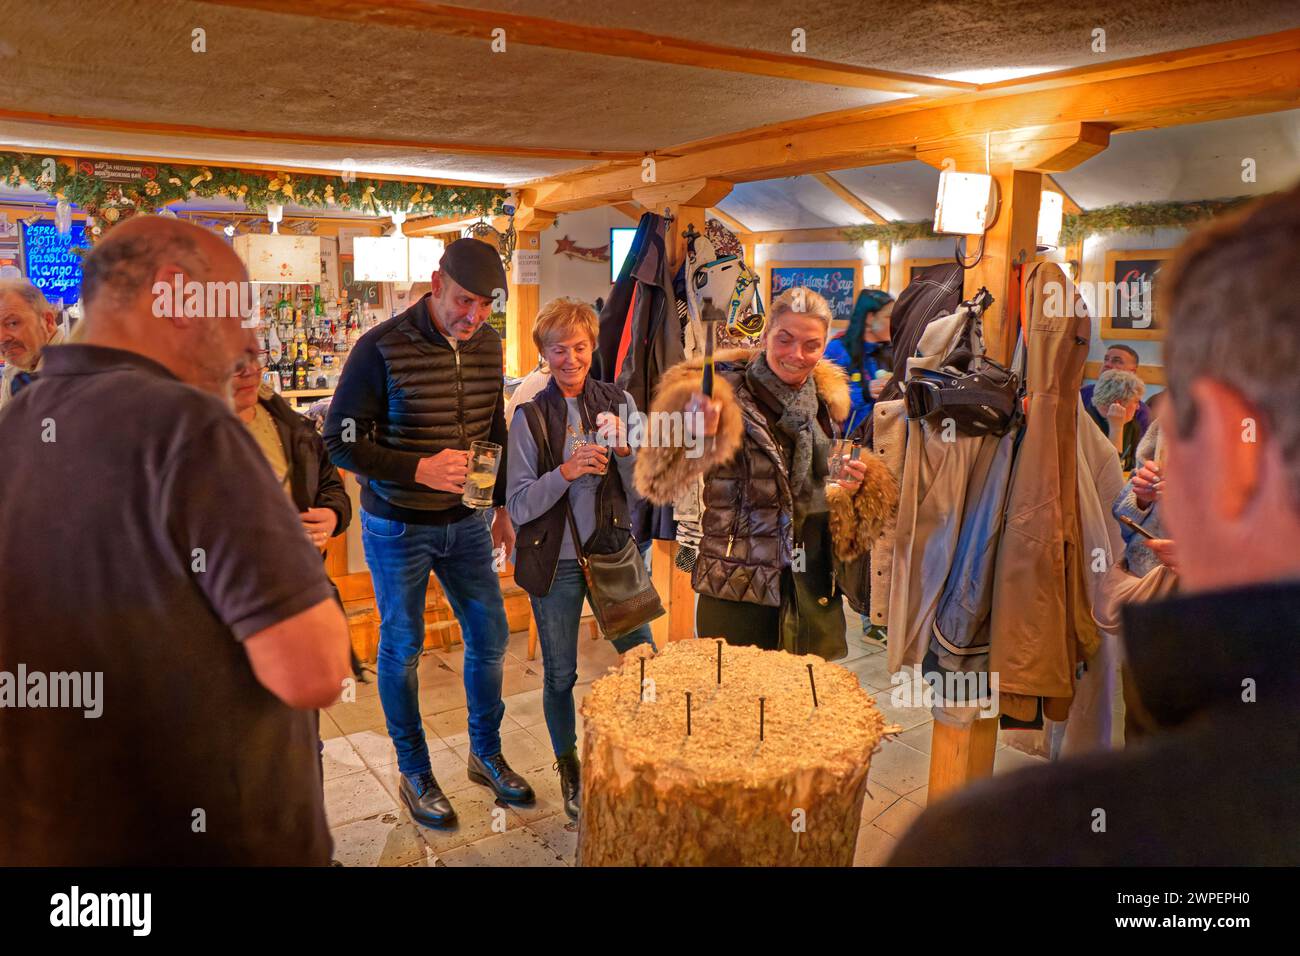 The Nail Game, un passatempo popolare e tradizionale che si gioca al BJ's Bar presso la stazione sciistica di Borovets, Bulgaria. Foto Stock